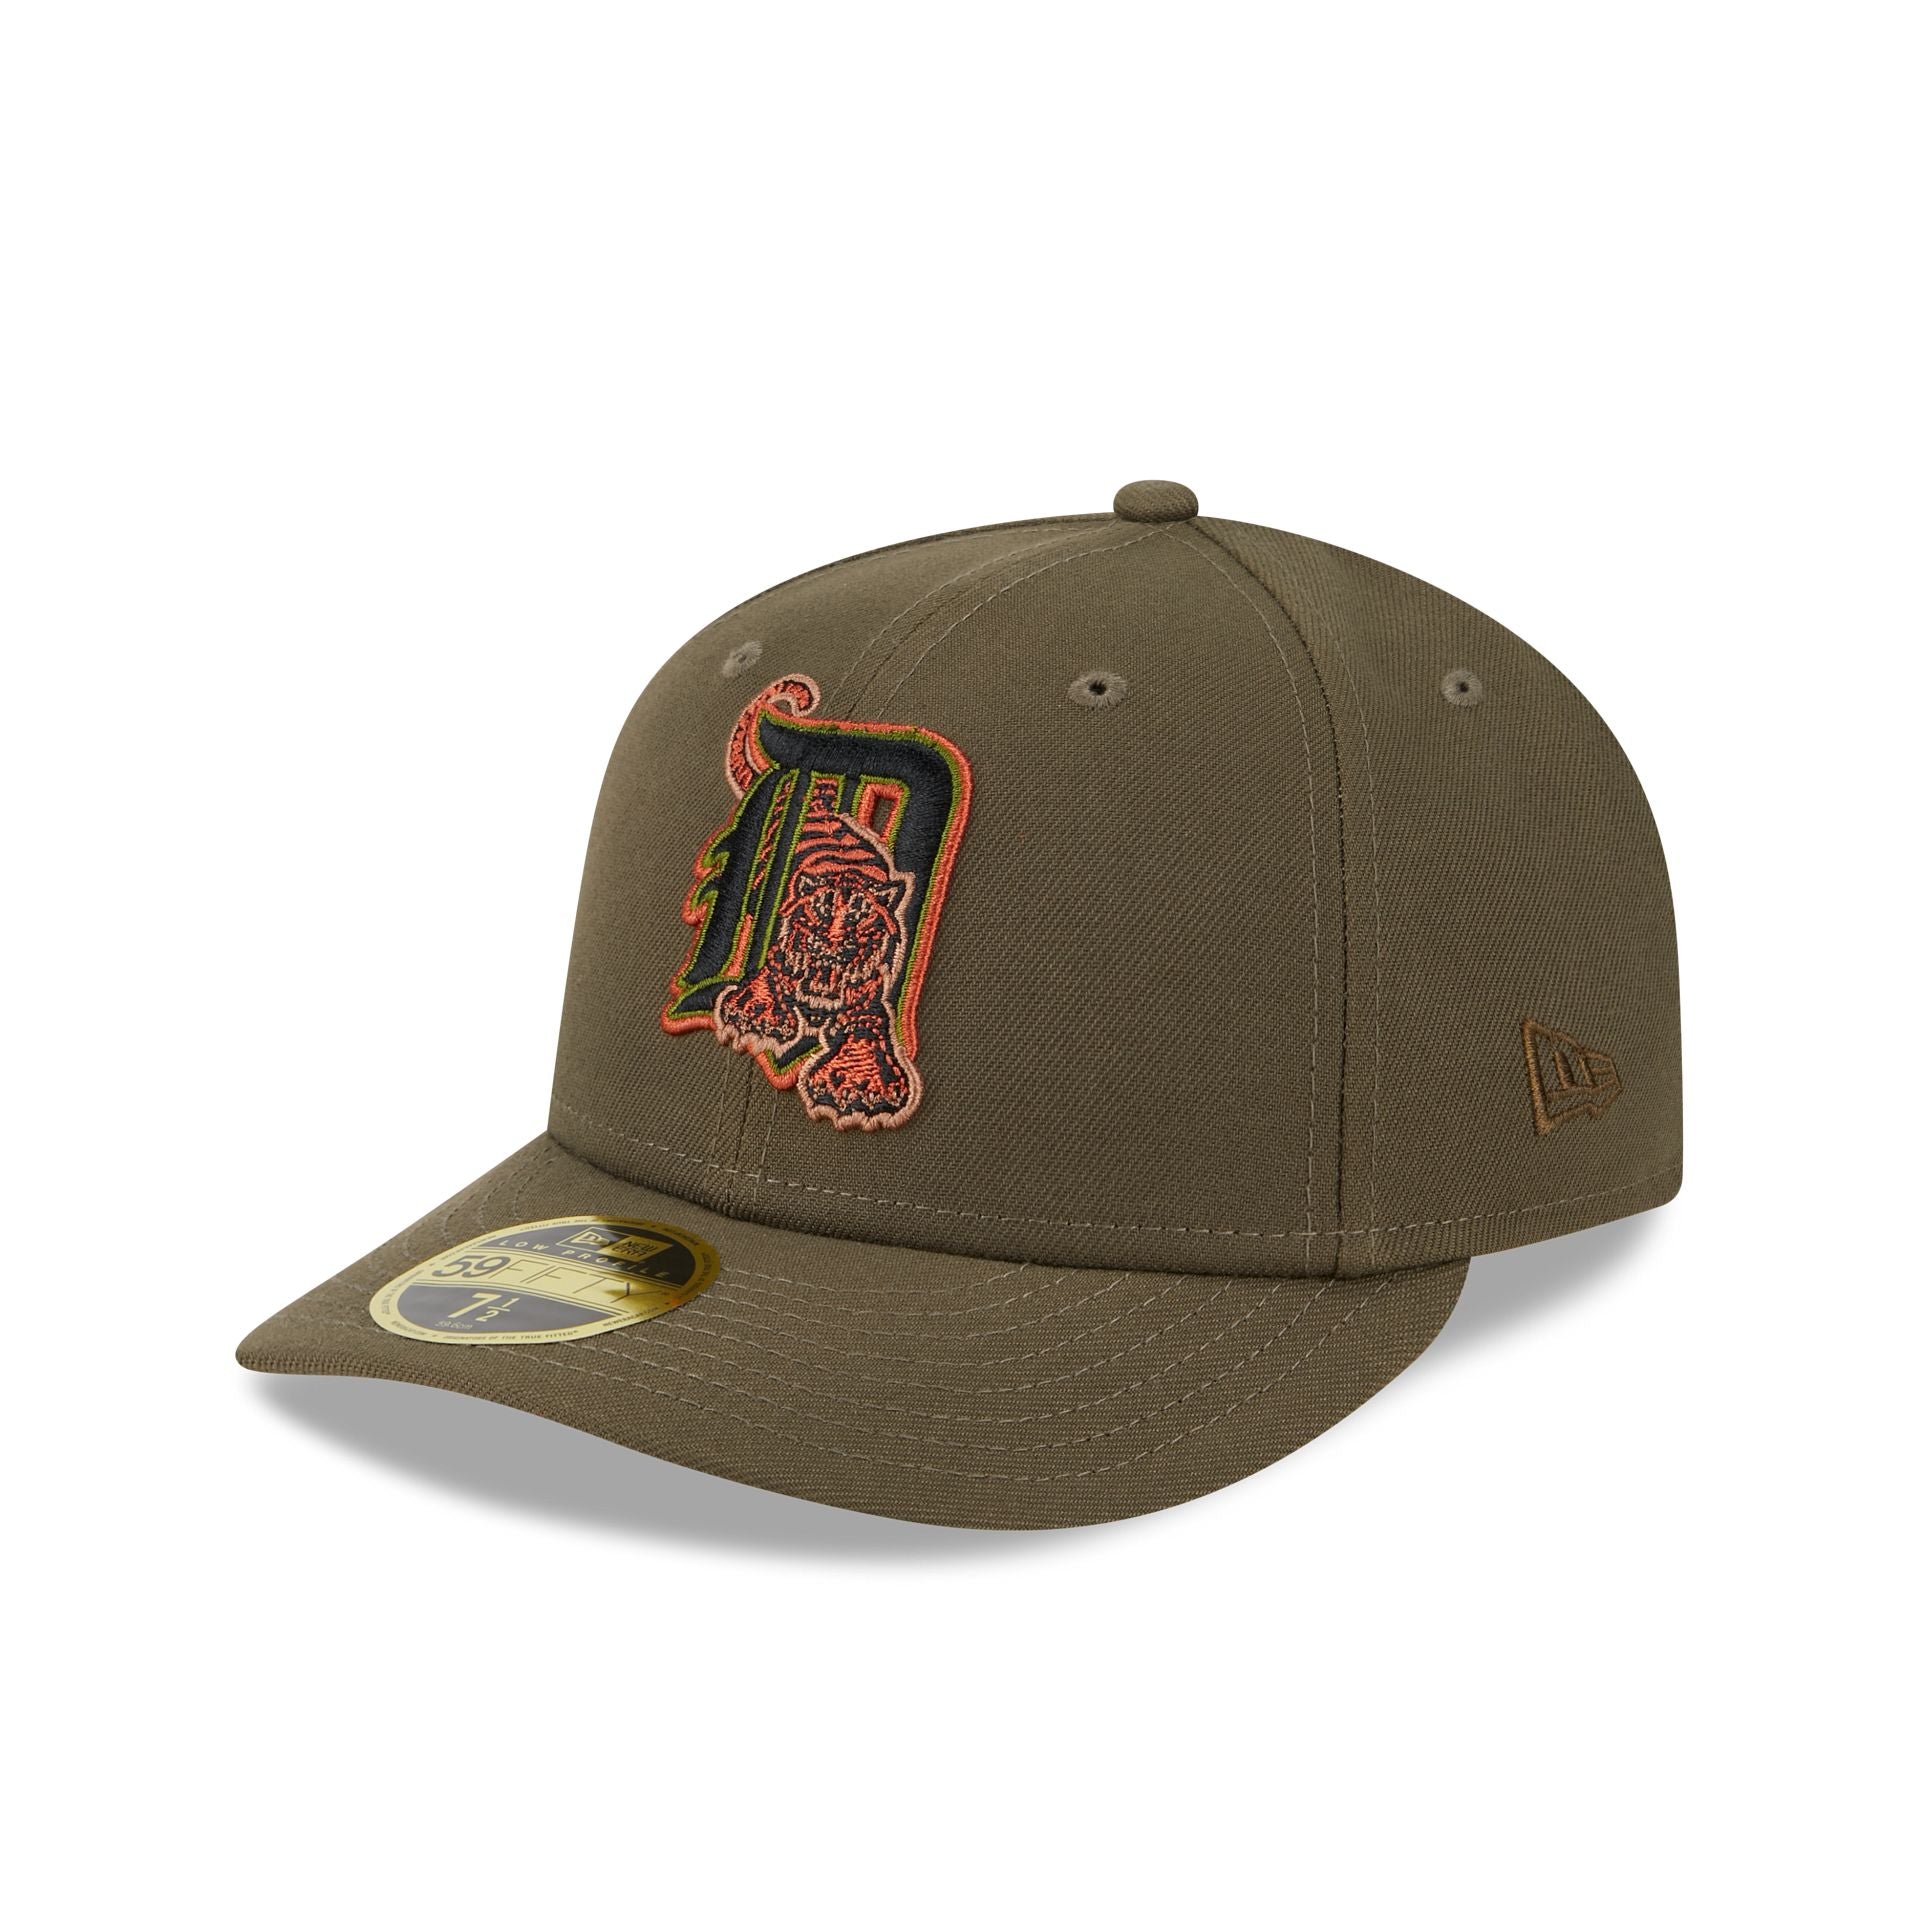 Detroit Tigers Hats & Caps – New Era Cap